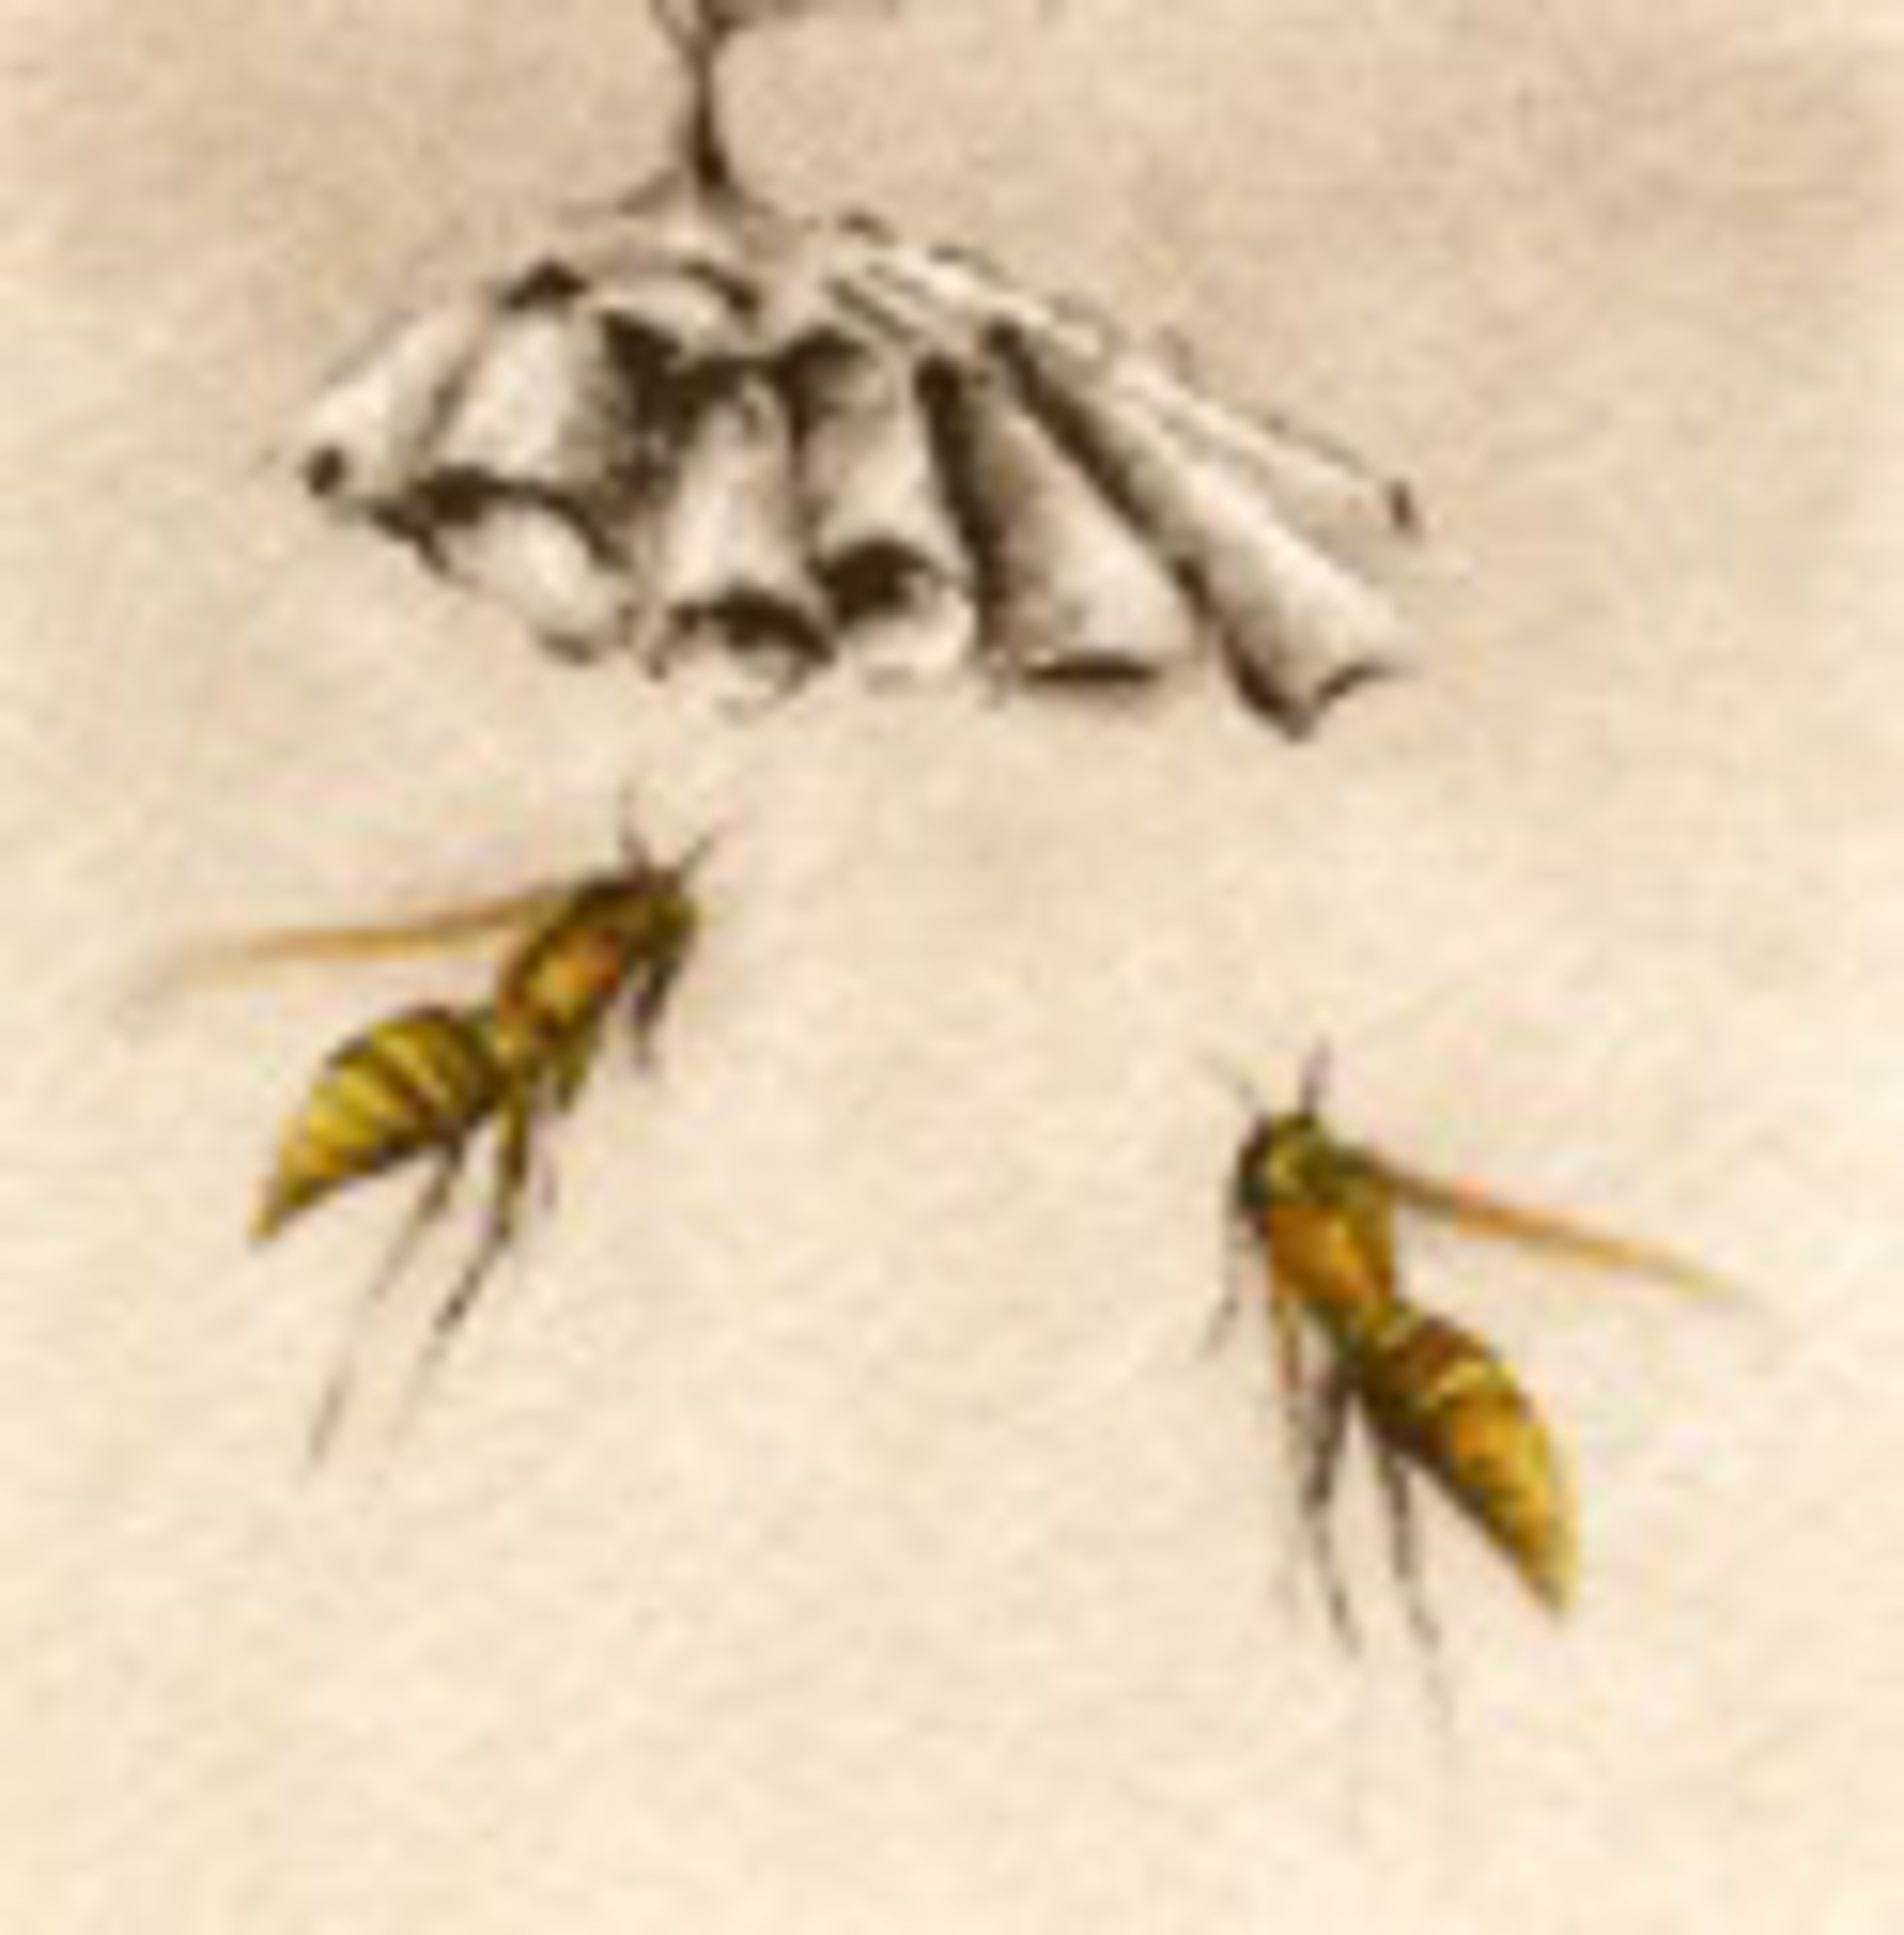 Paper Wasps_unframed, #17/100 by Melanie Fain